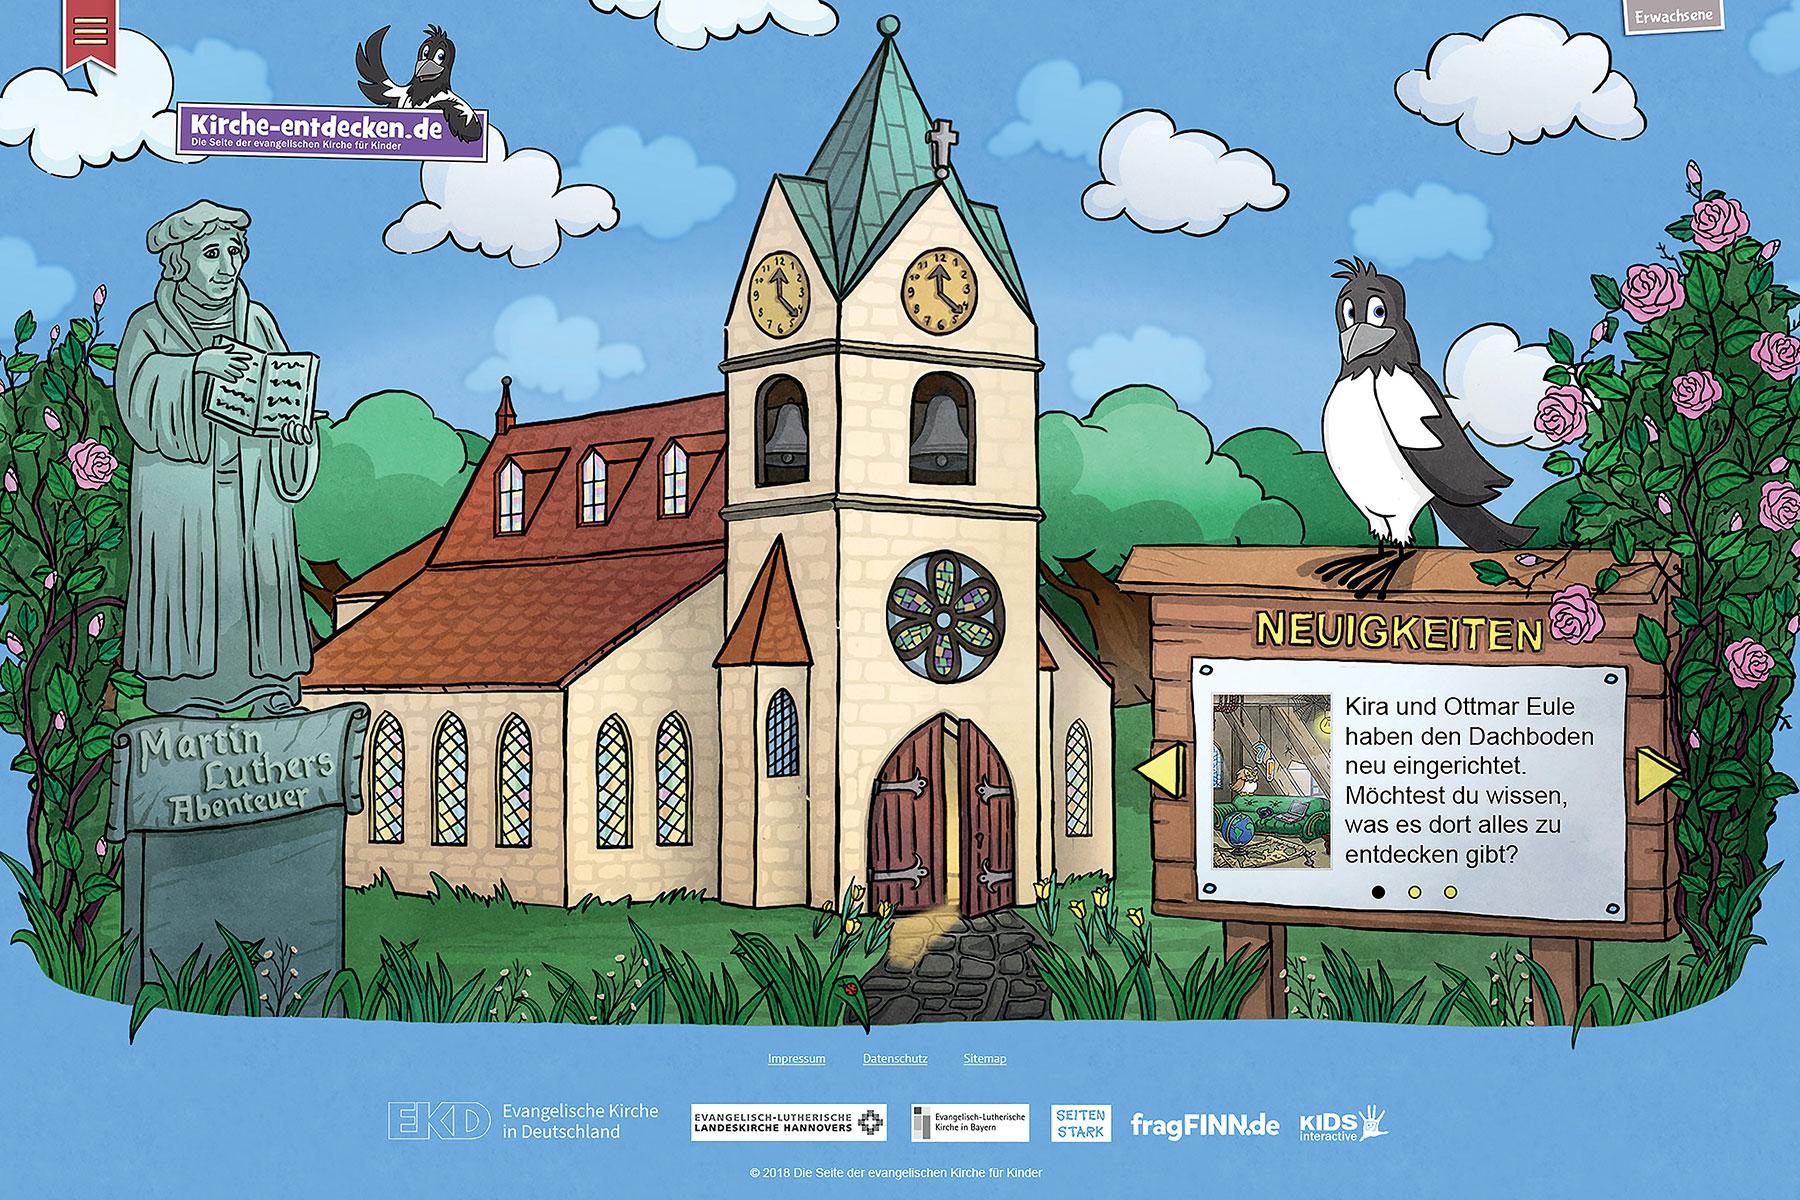 Die Website "Kirche entdecken" lädt Kinder ein, die Kirche und den christlichen Glauben zu entdecken und das Leben Martin Luthers und der Reformation zu erforschen. Fotos: epv